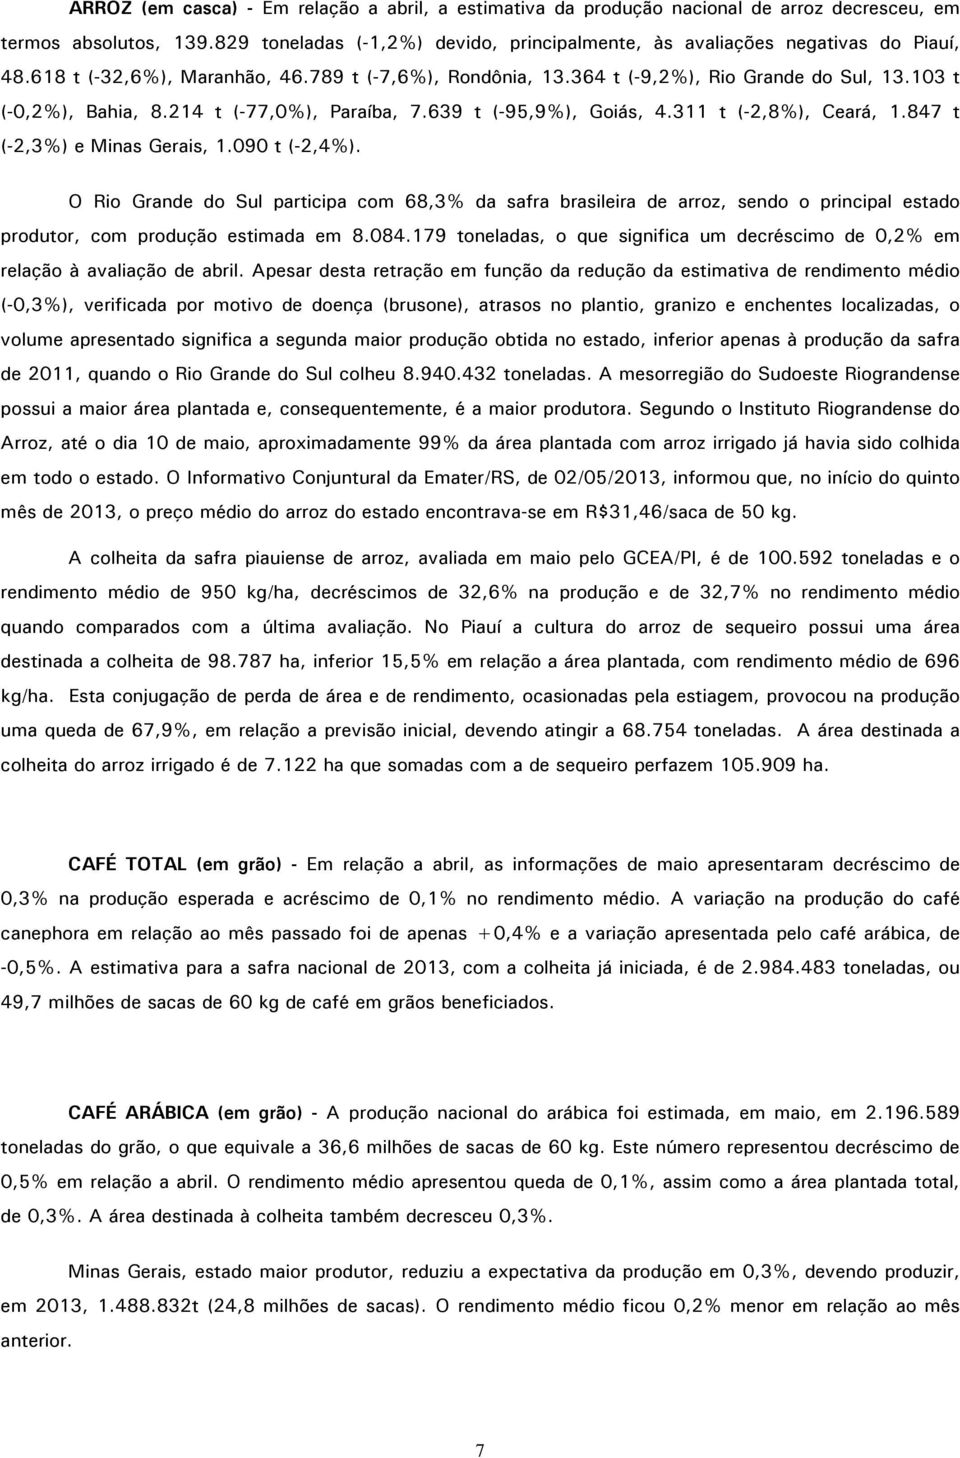 103 t (-0,2%), Bahia, 8.214 t (-77,0%), Paraíba, 7.639 t (-95,9%), Goiás, 4.311 t (-2,8%), Ceará, 1.847 t (-2,3%) e Minas Gerais, 1.090 t (-2,4%).